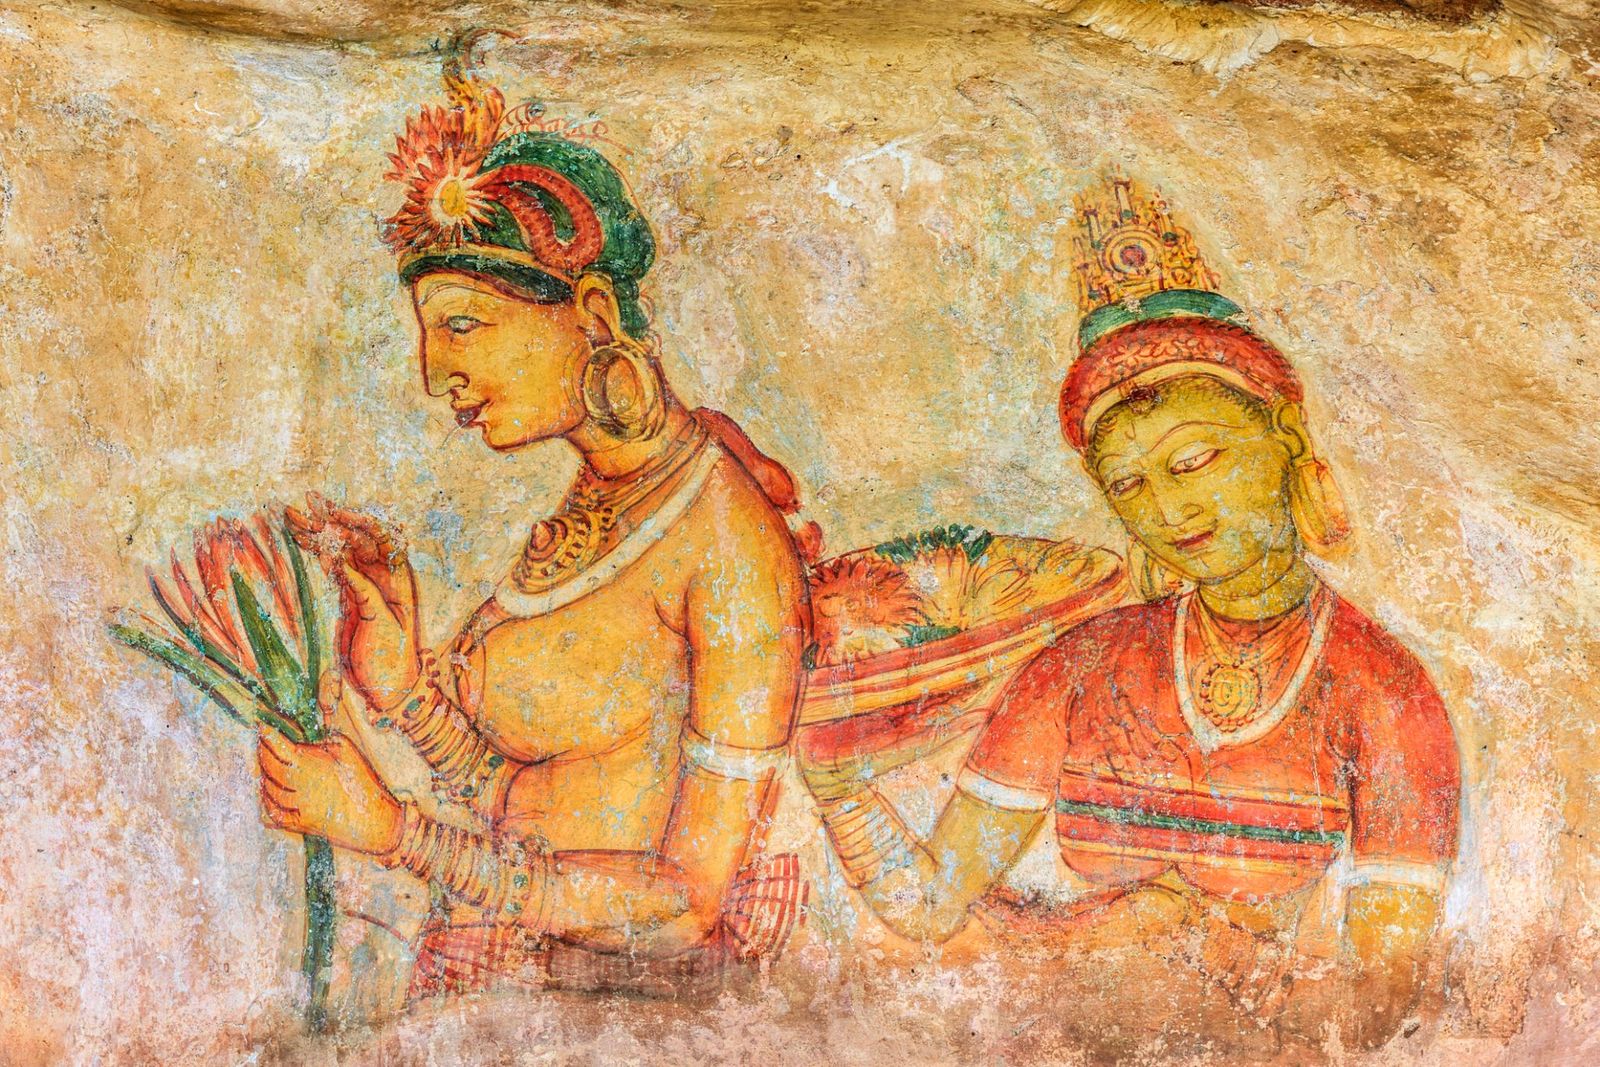 Exploring Sri Lanka’s Ancient Rock Fortress of Sigiriya